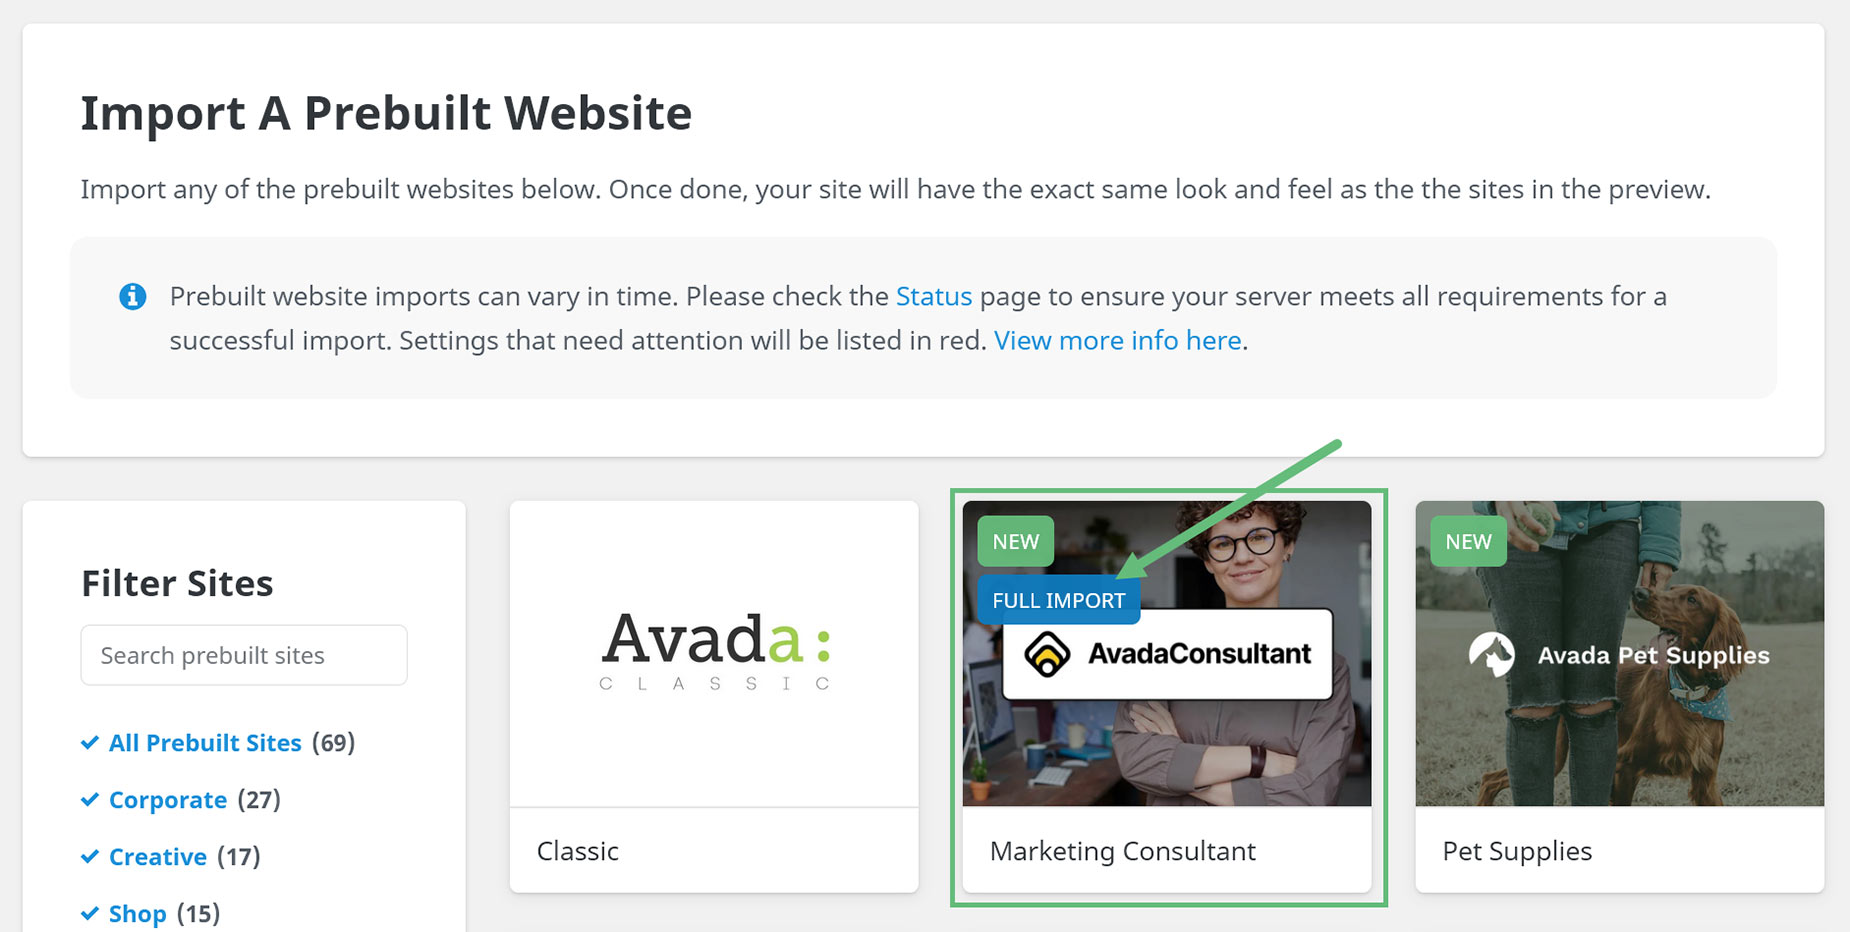 Avada Prebuilt Websites > Full Import